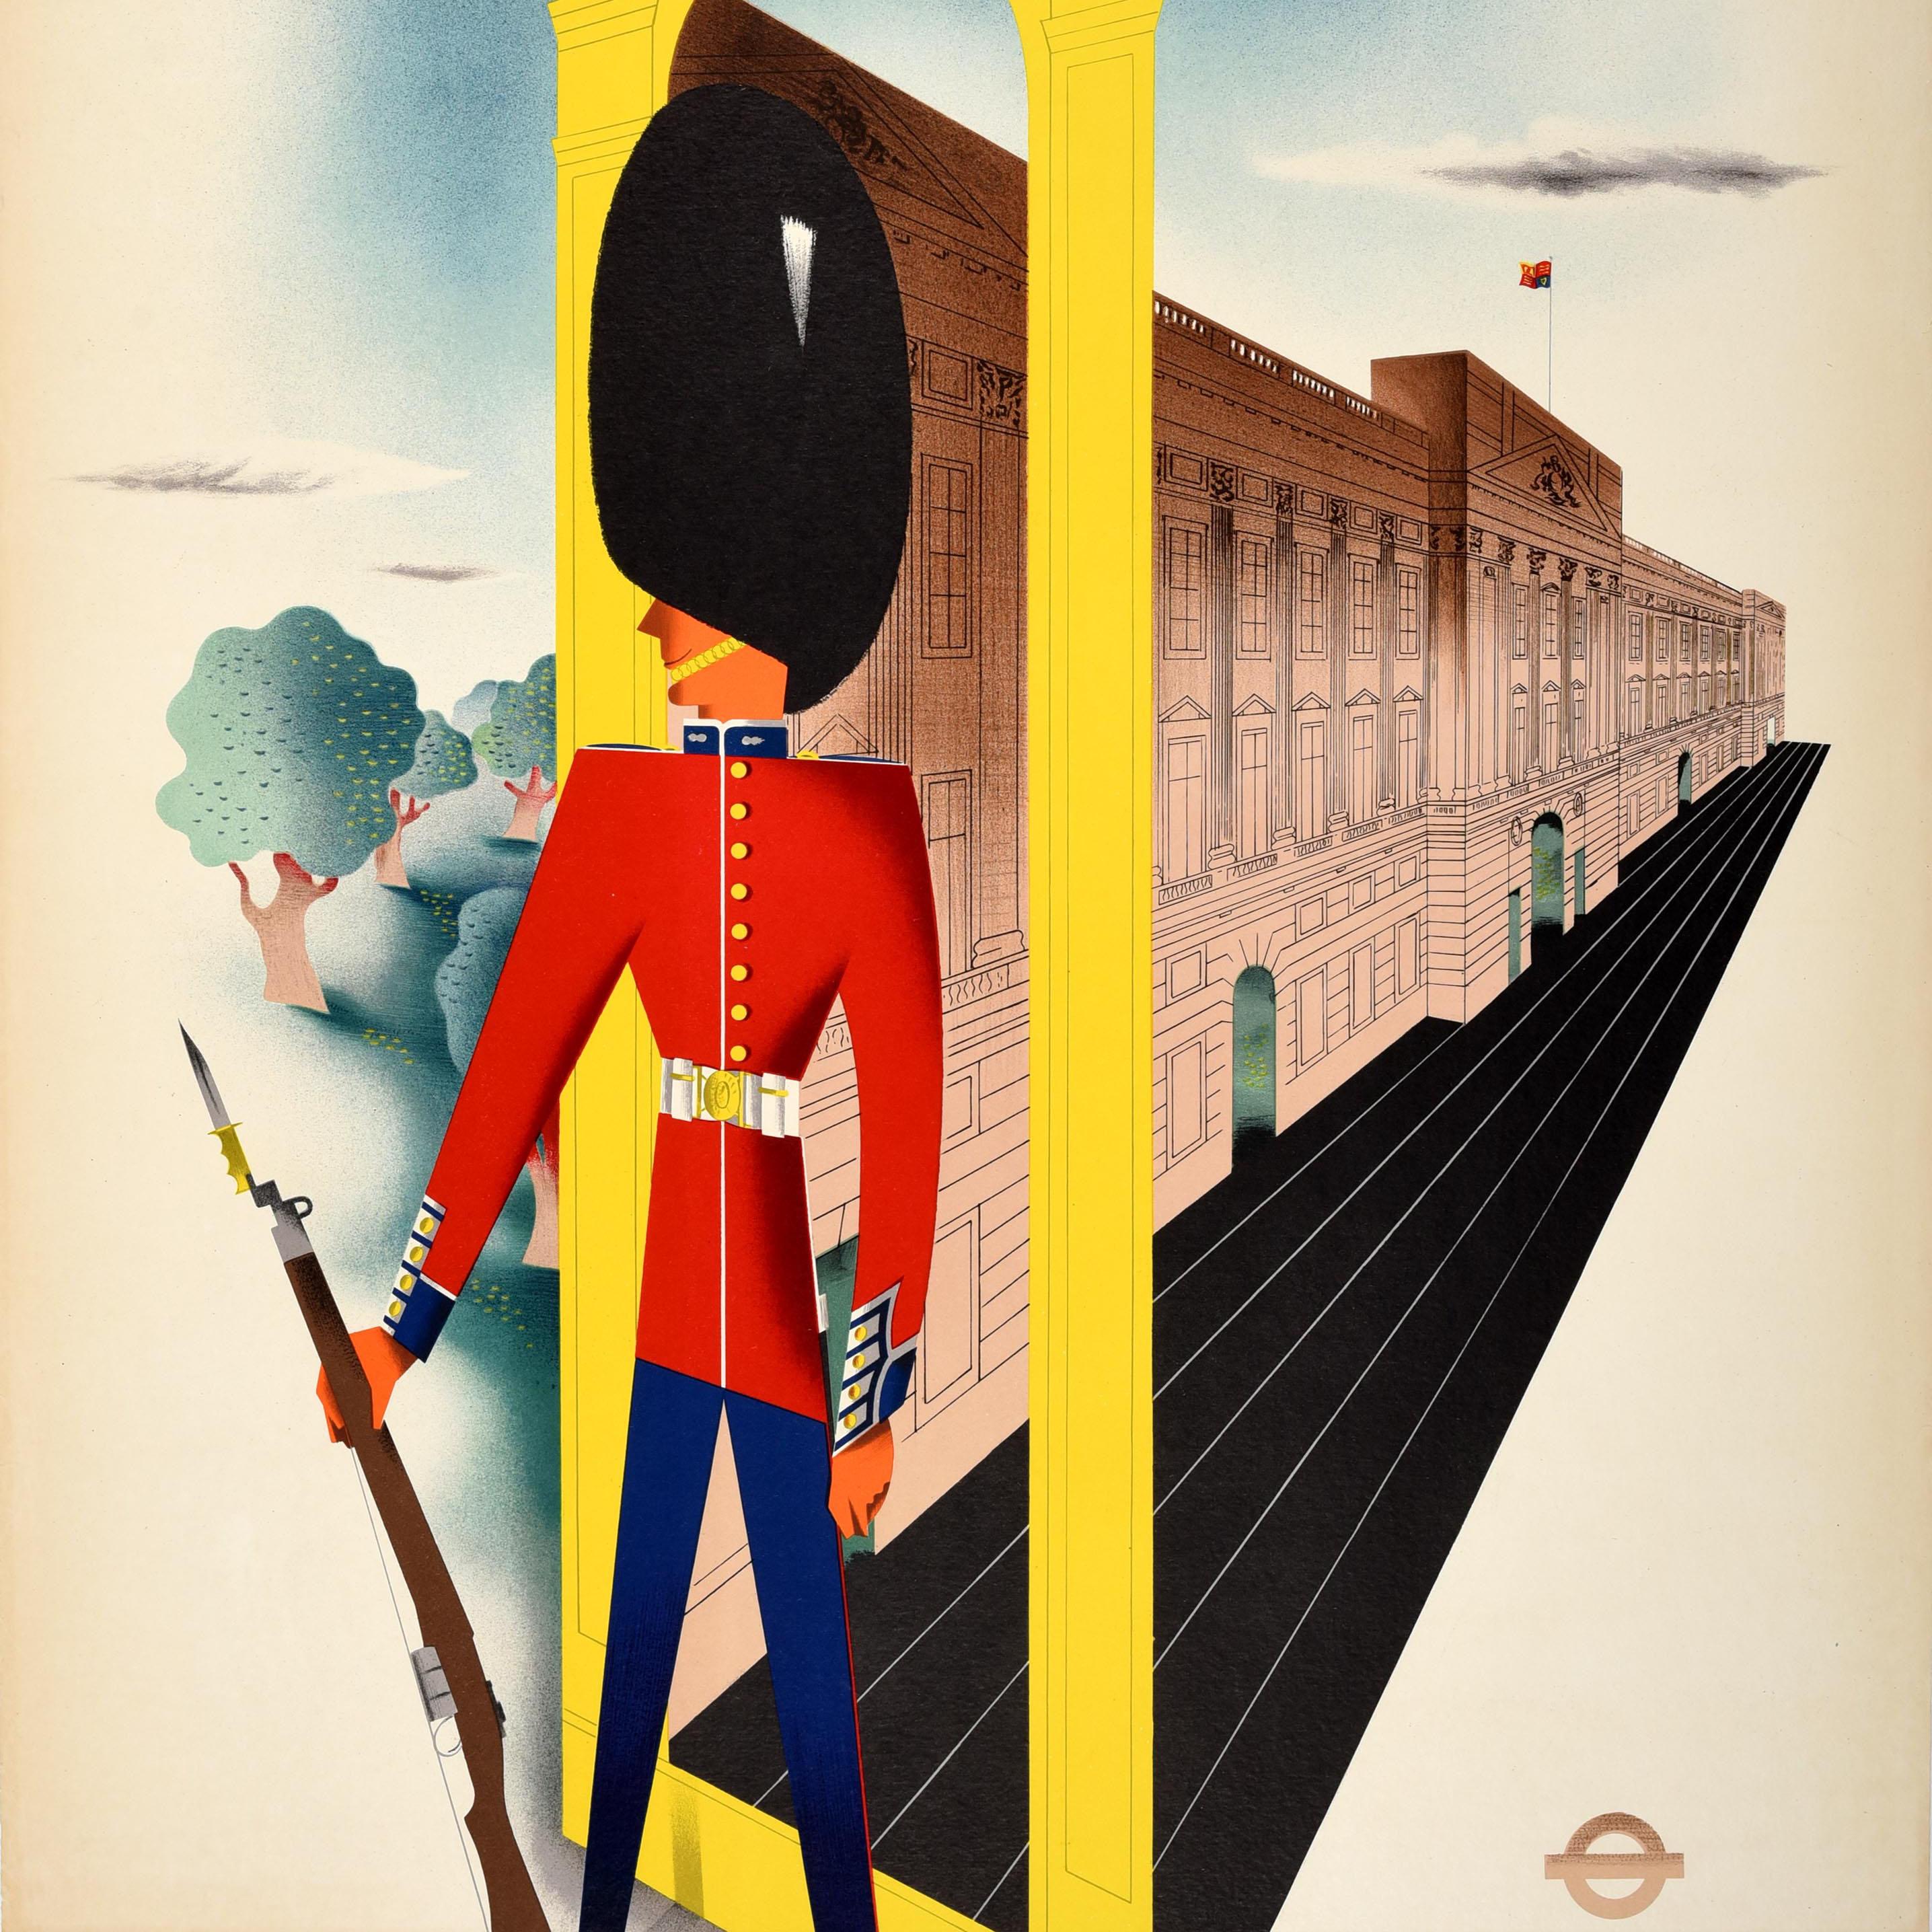 Affiche originale d'époque sur les transports londoniens présentant une illustration colorée du milieu du siècle réalisée par le peintre et affichiste John Bainbridge (1919-1978) représentant un garde royal / garde de la reine en uniforme militaire